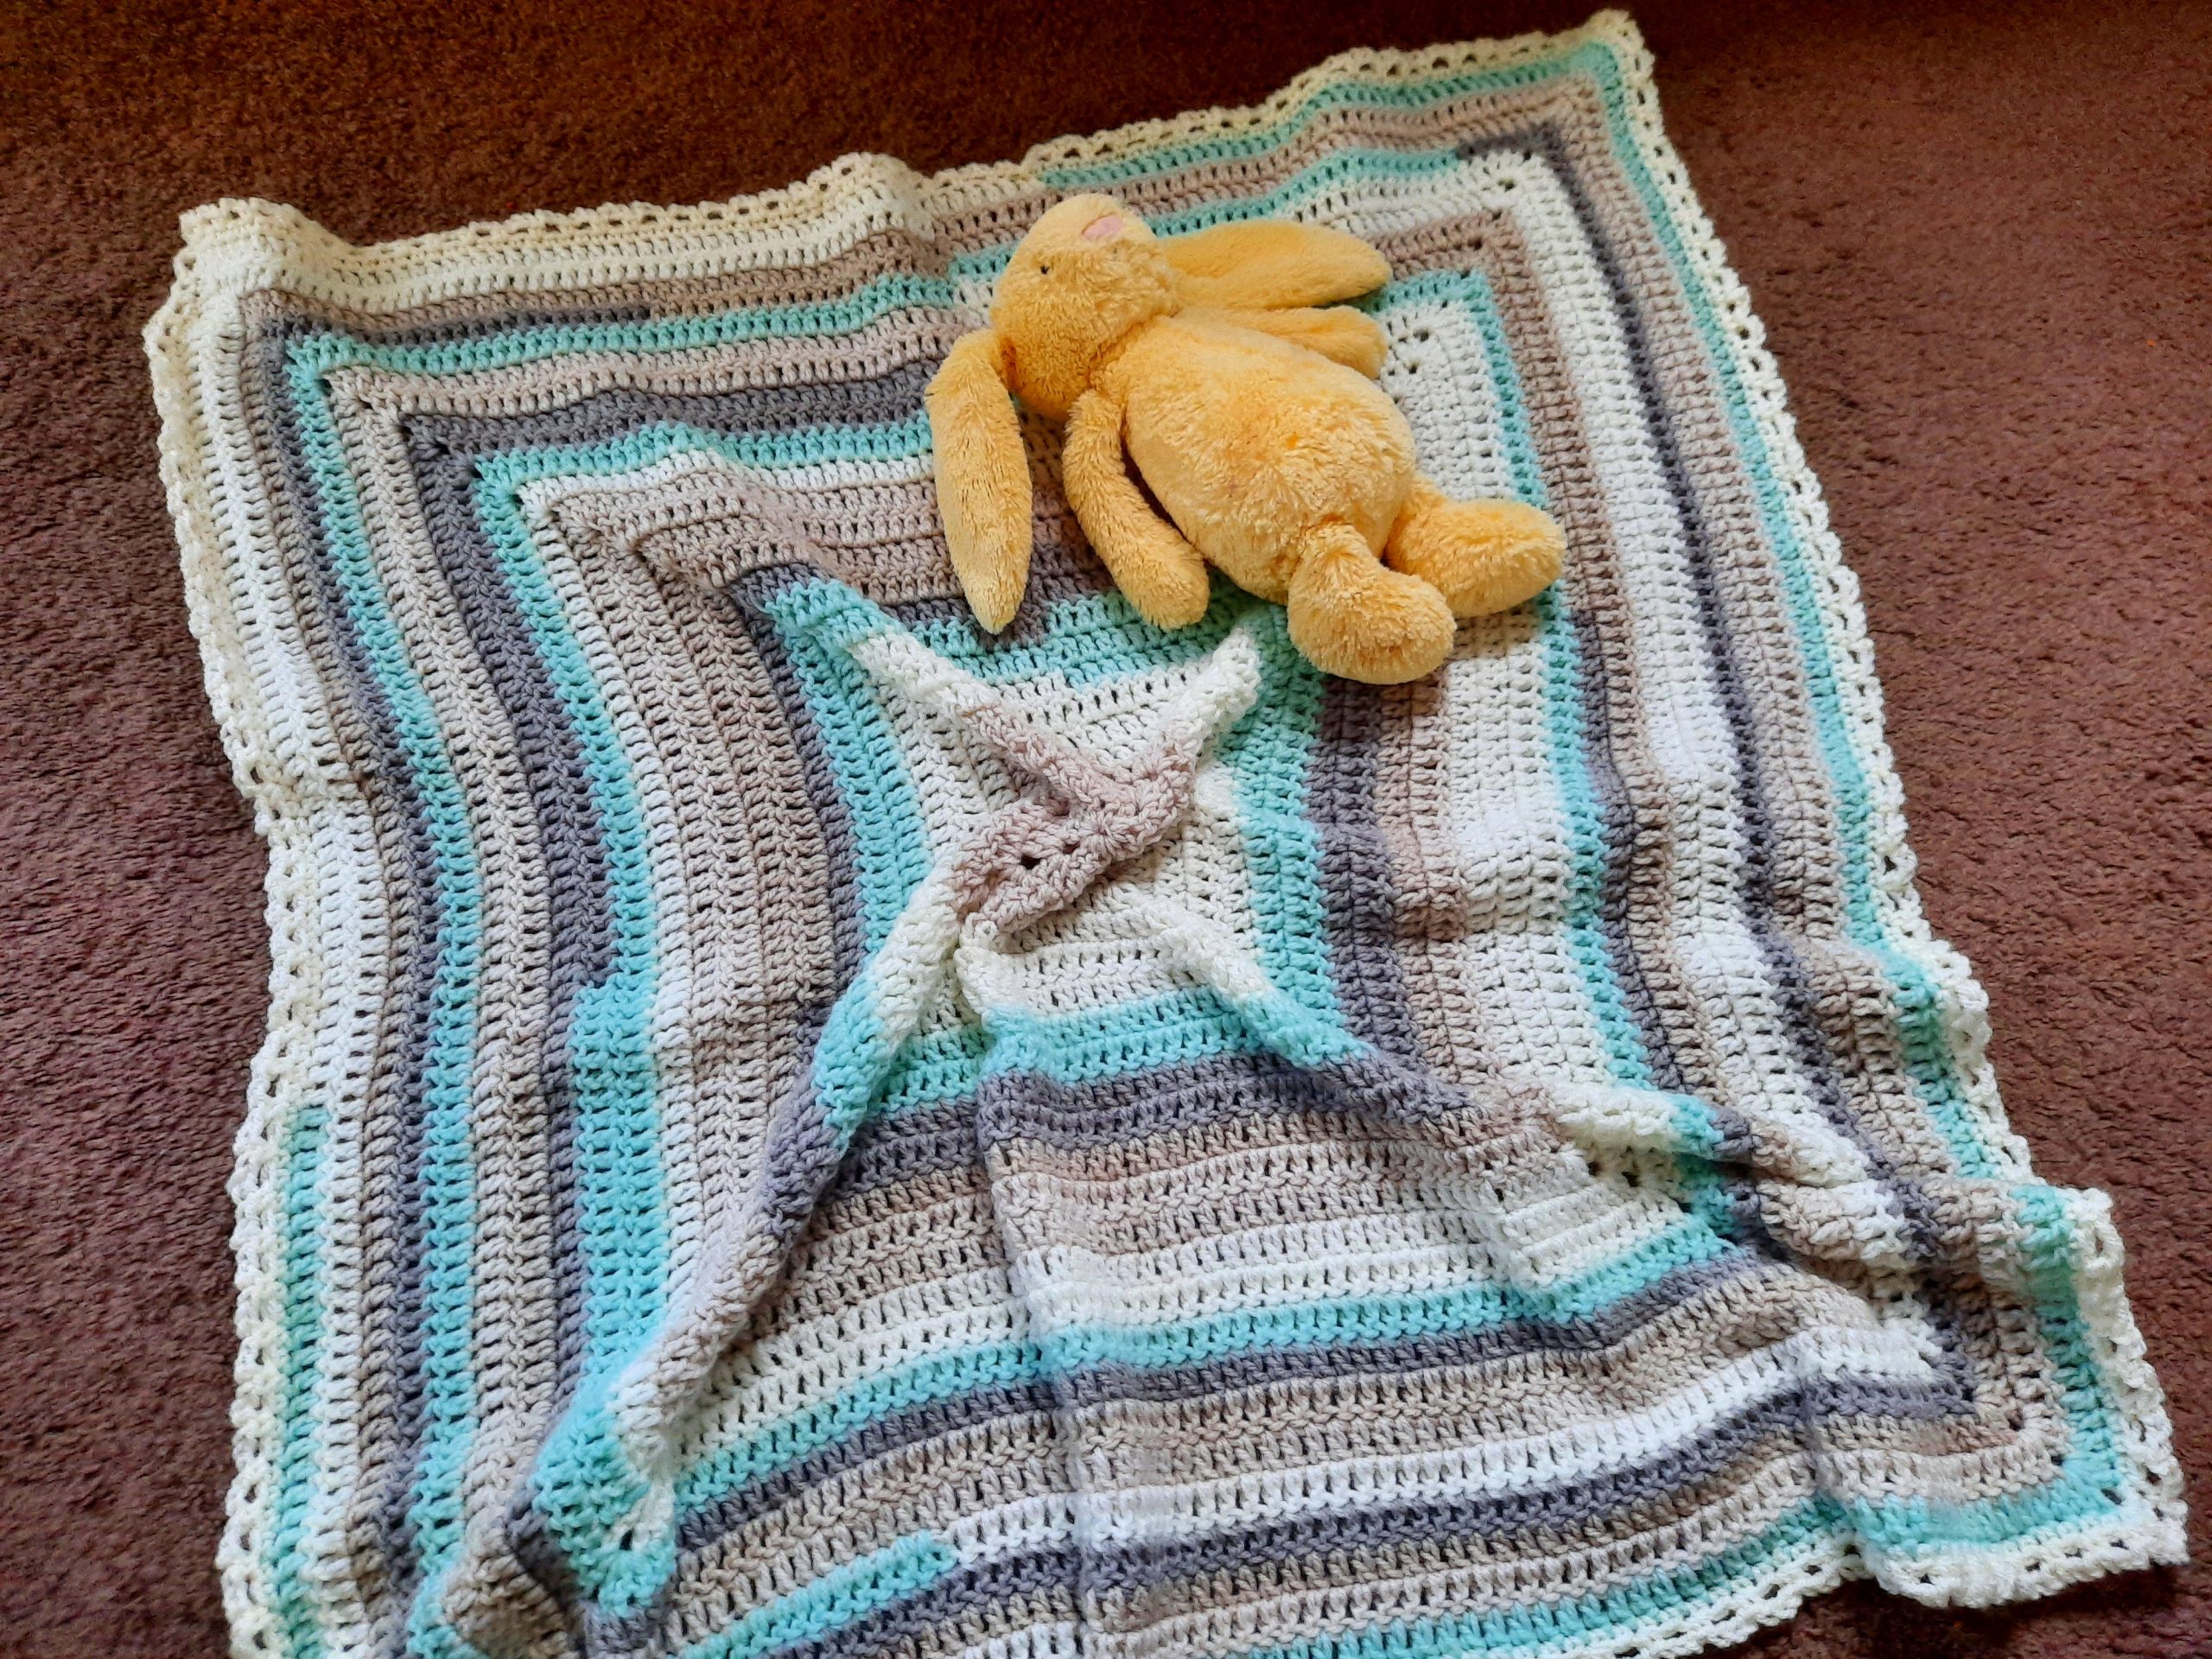 Crochet a Baby Blanket